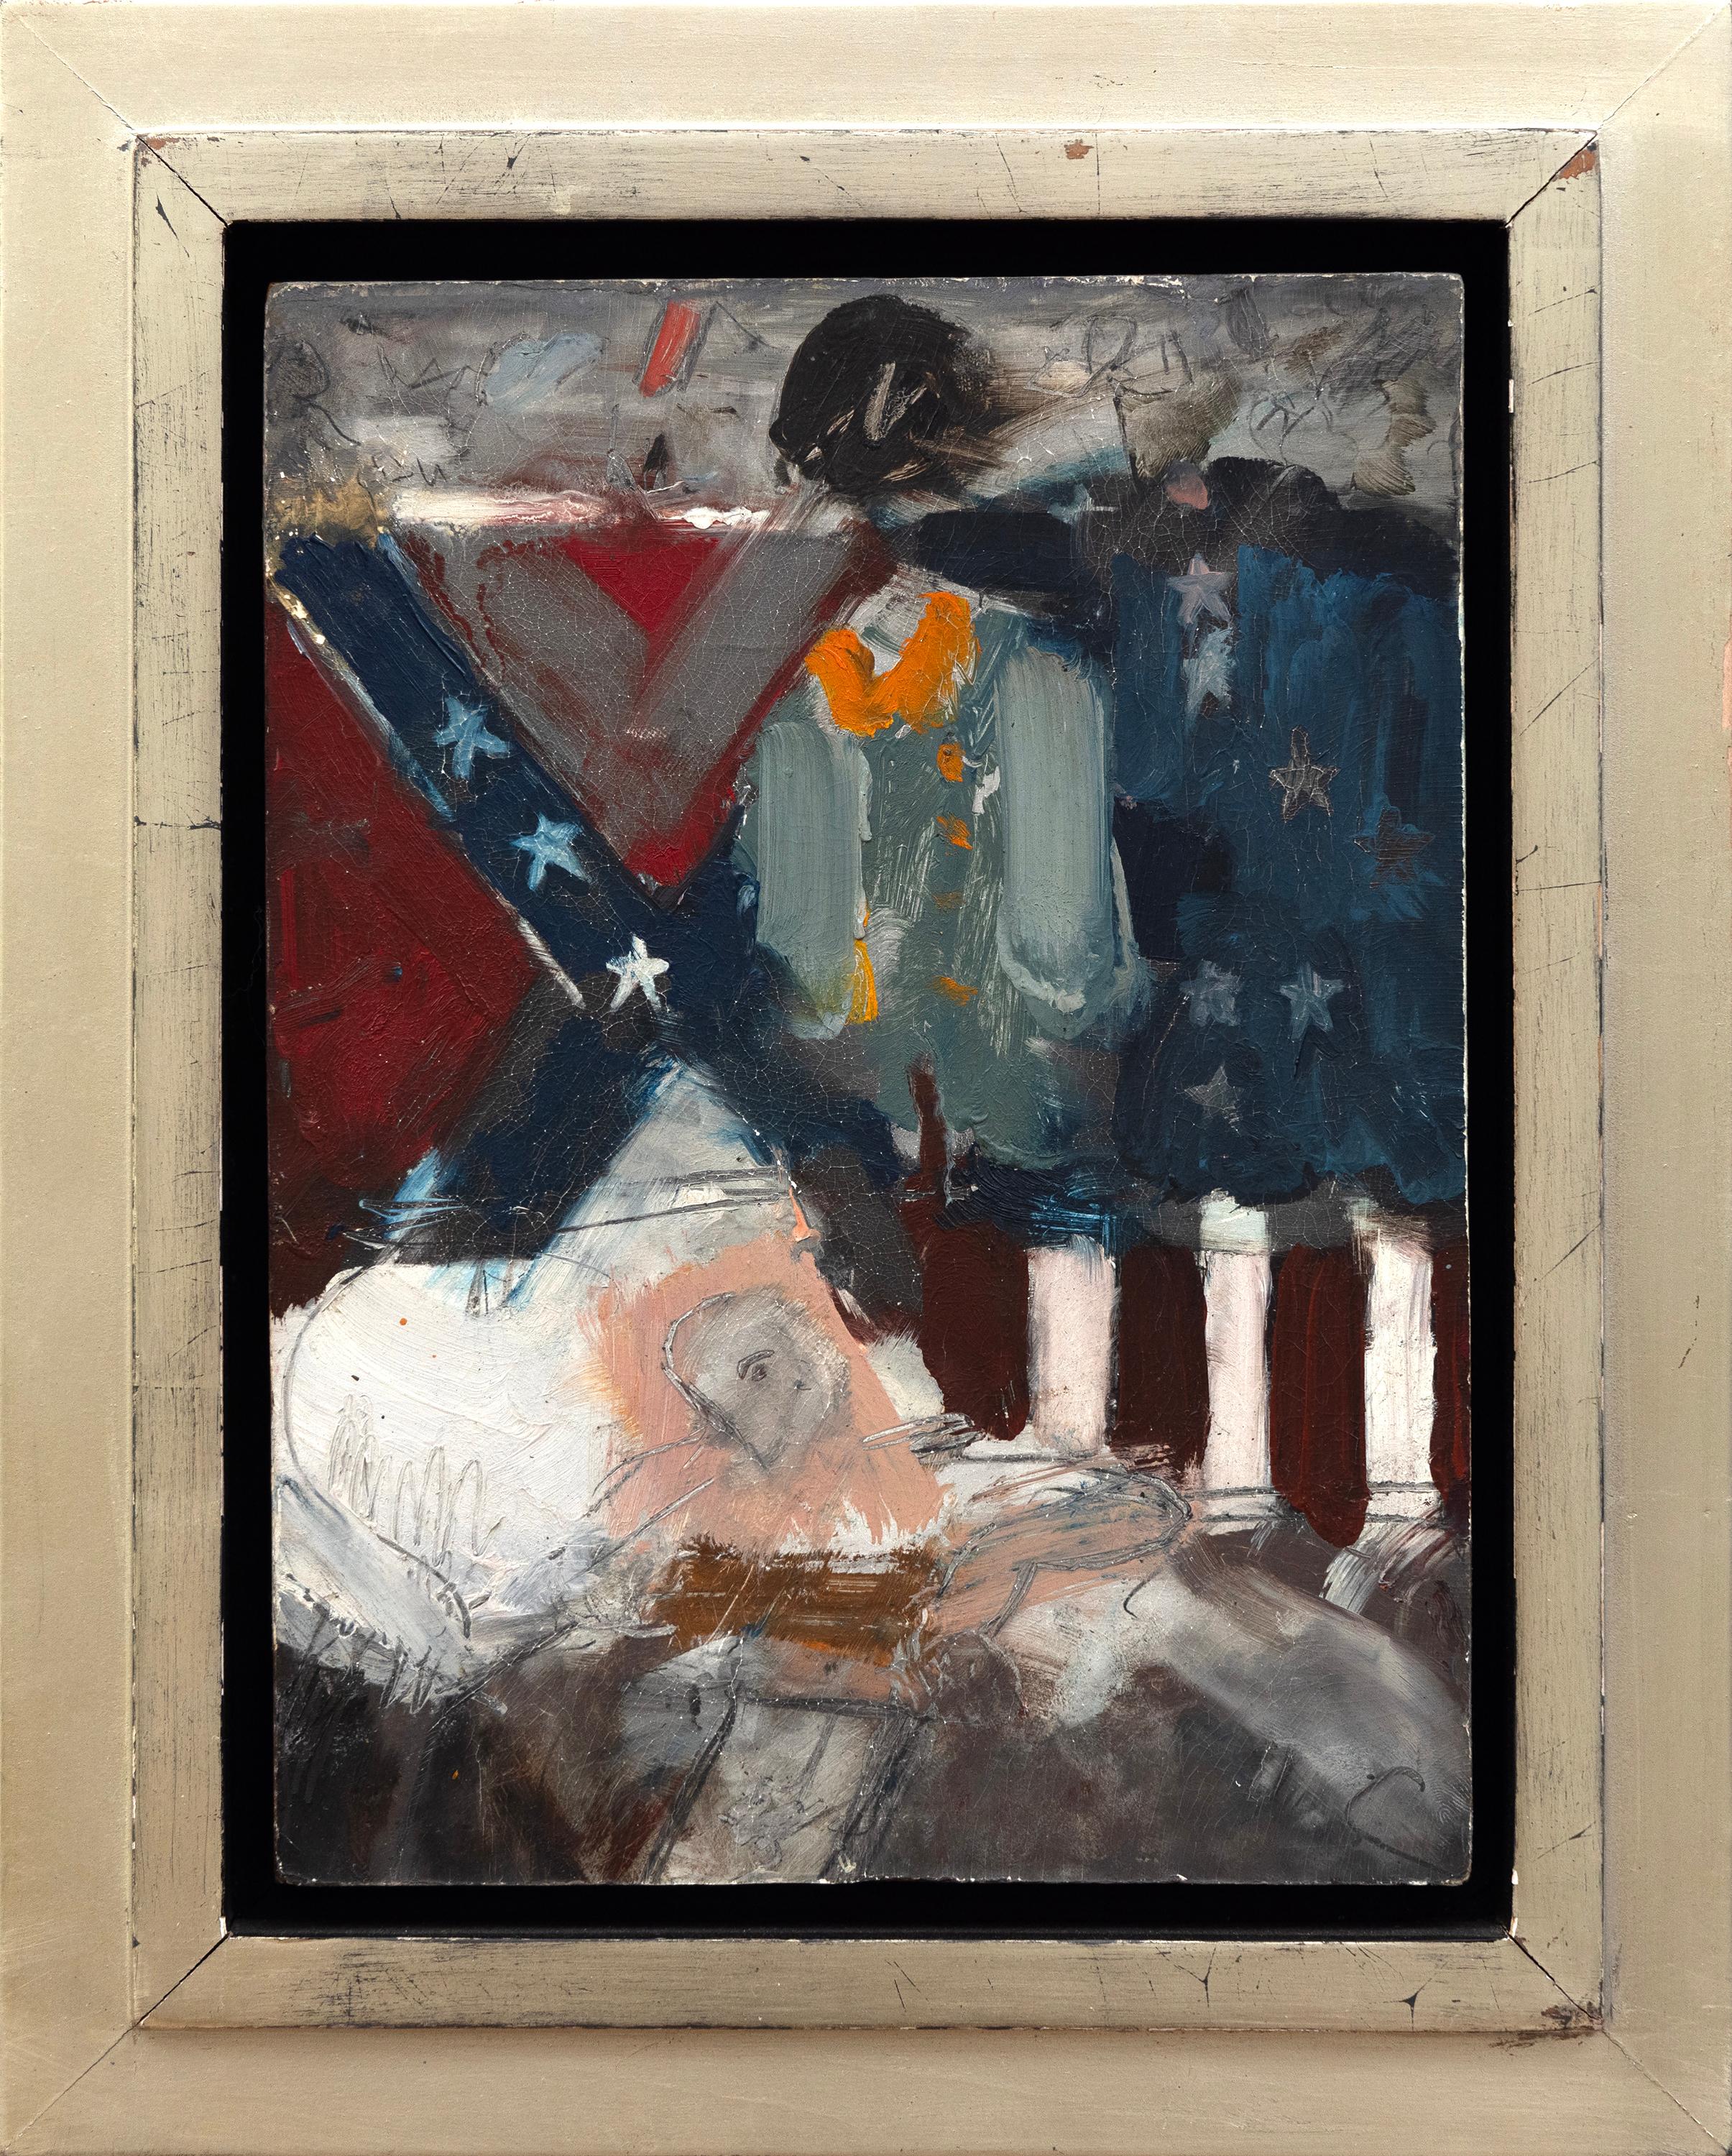 Letzter Bürgerkriegsveteran – Painting von Larry Rivers